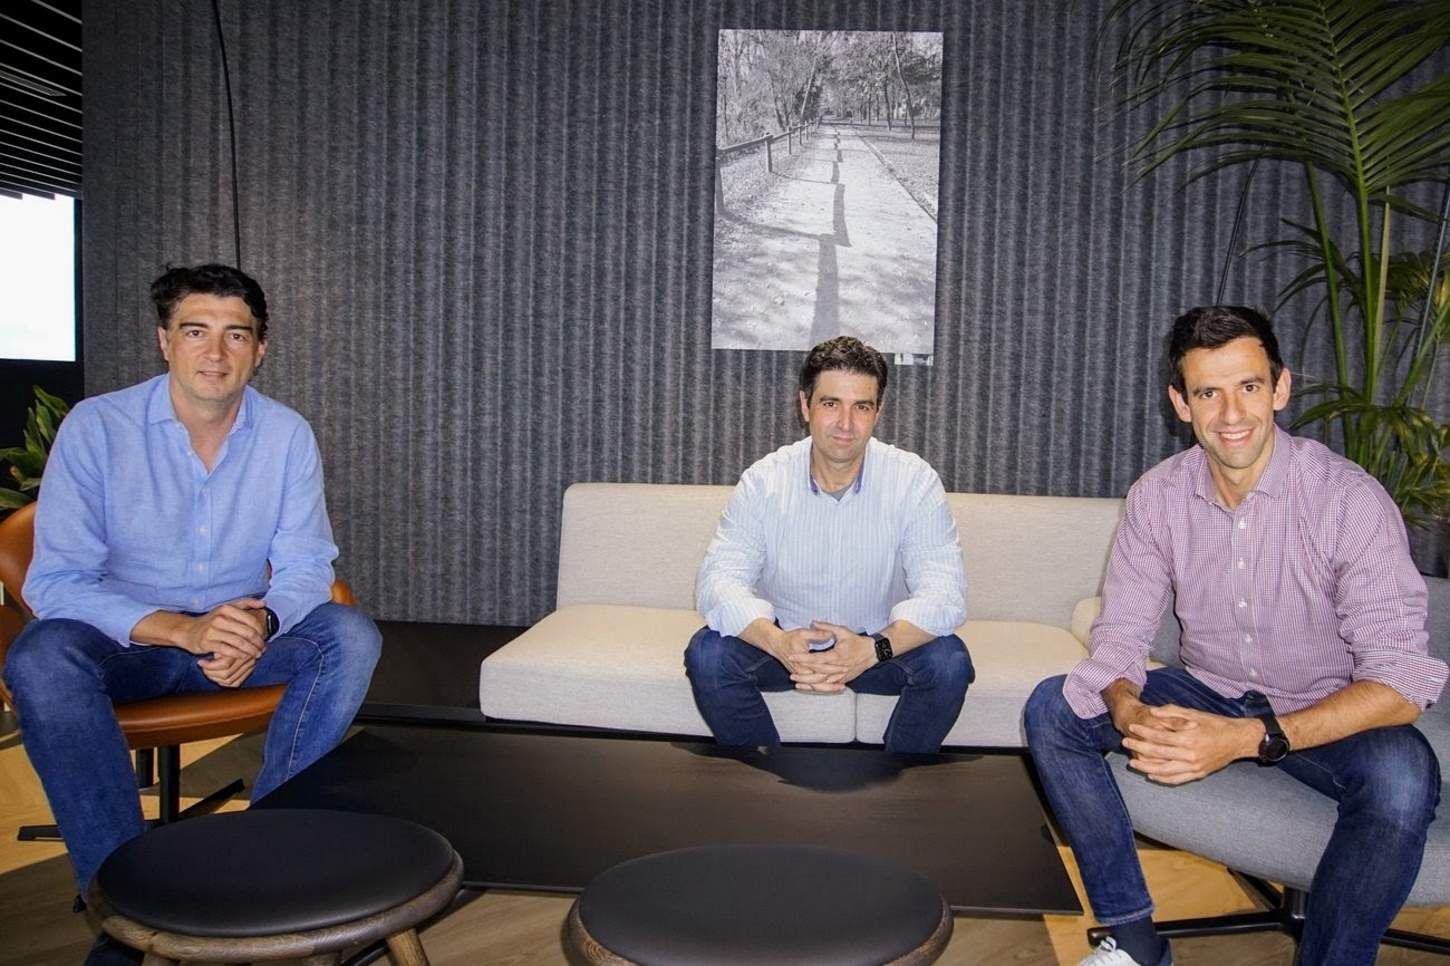 La start-up Luzia capta 18 milions per ampliar plantilla i obrir seu a Barcelona